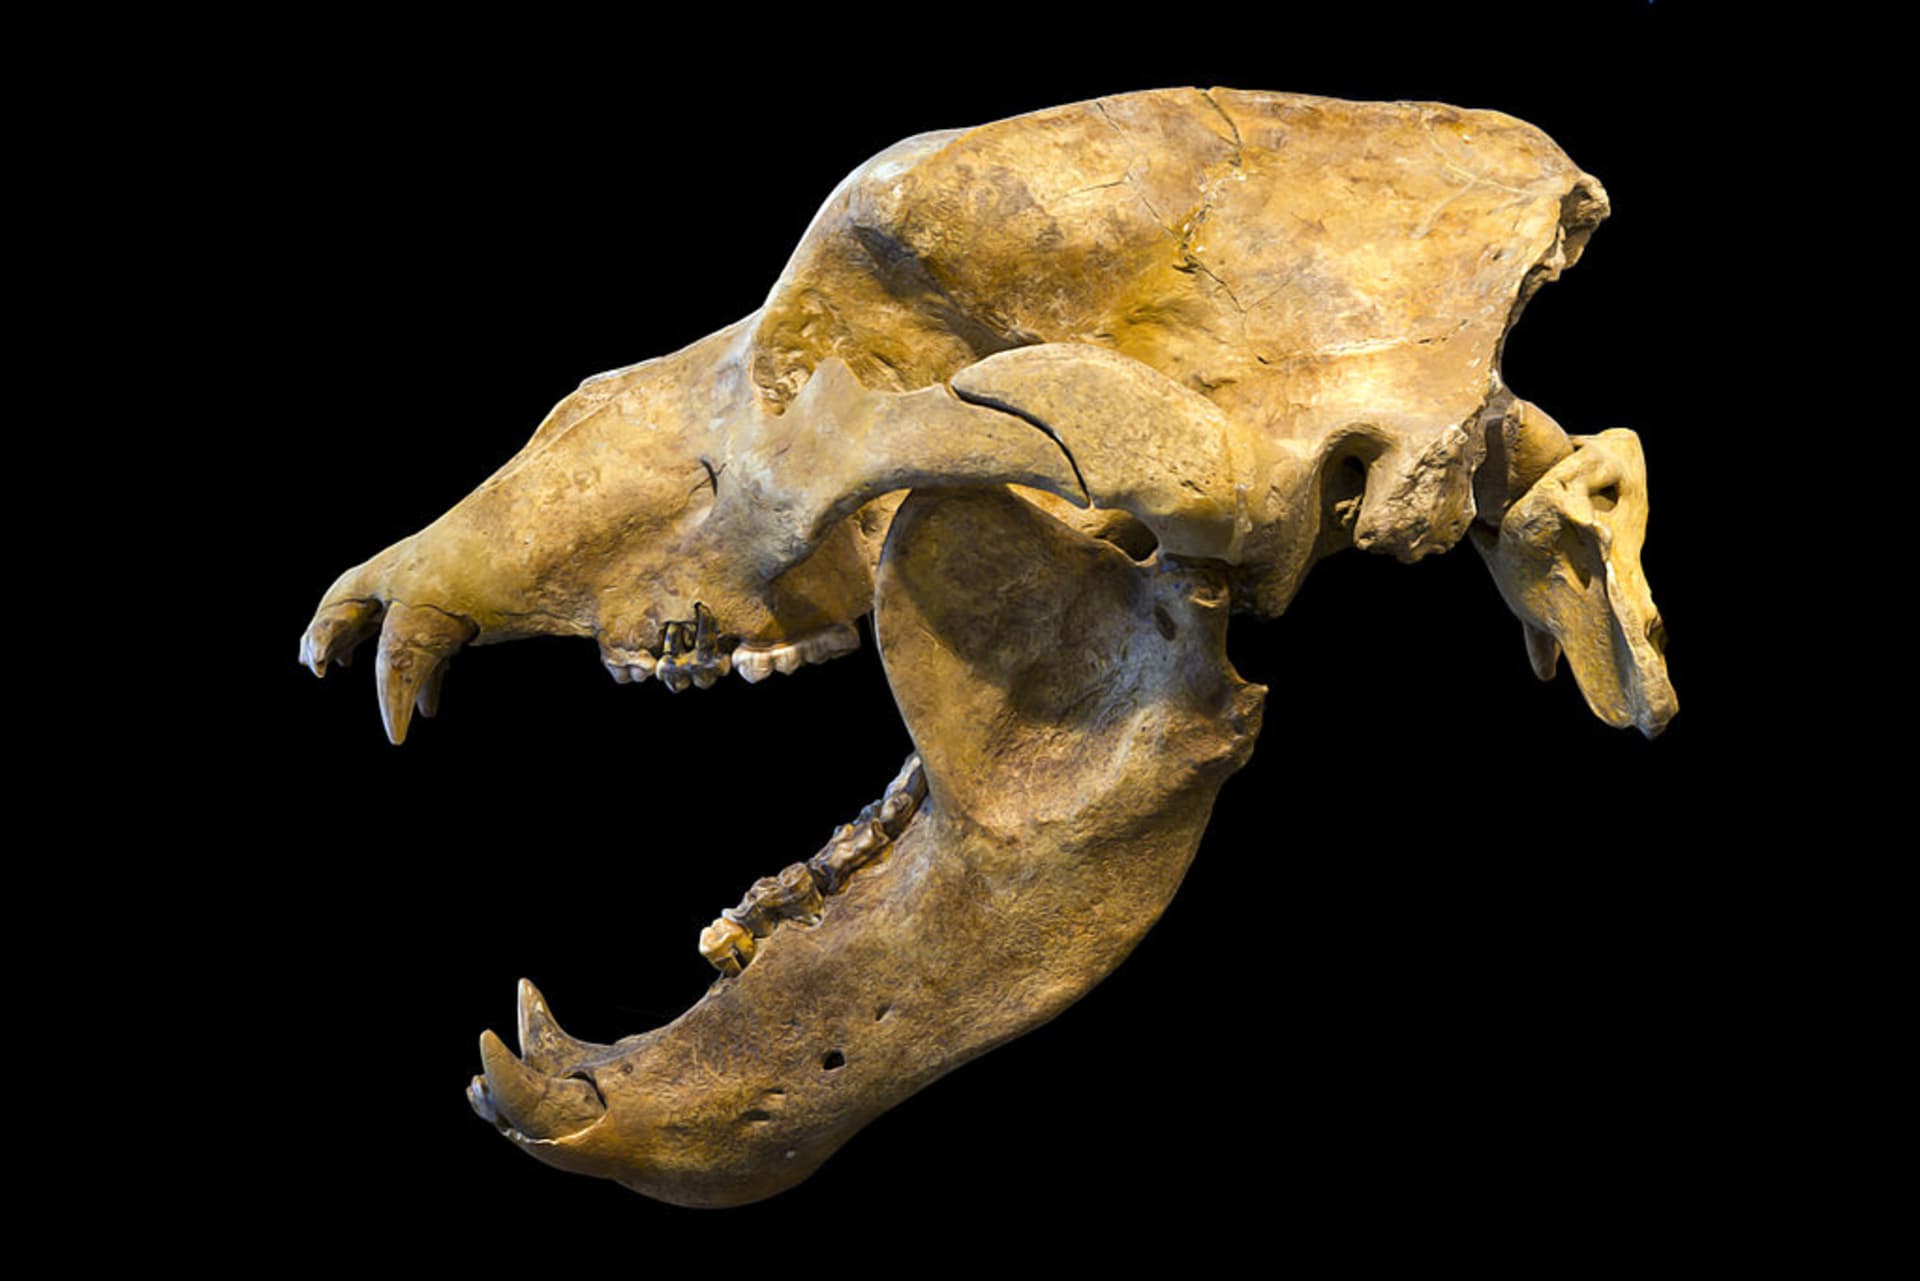 Lebka jeskynního medvěda - vyhynulého vegana